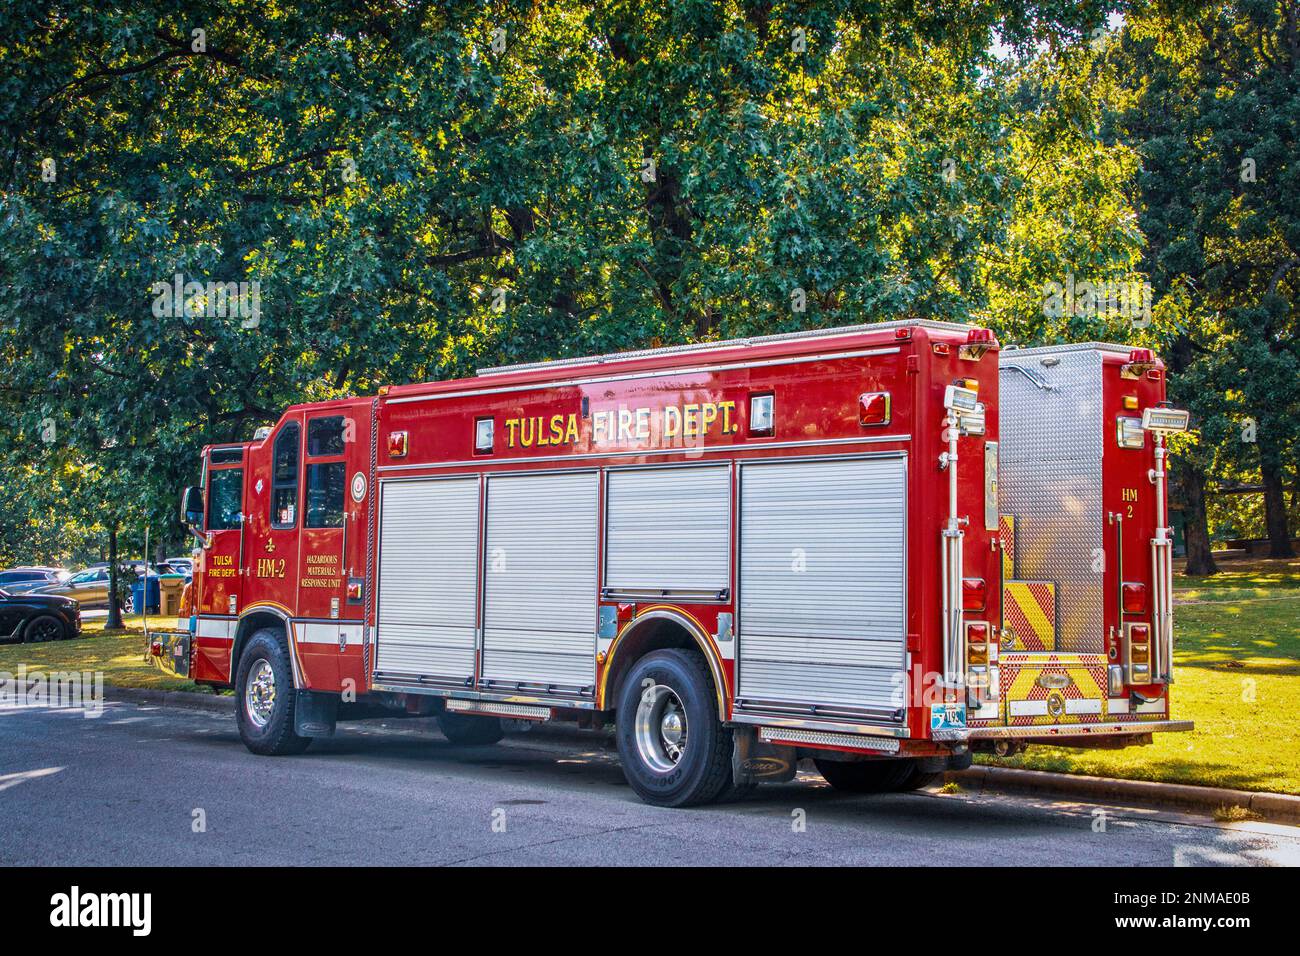 2022 09 17- Tulsa États-Unis - camion de l'unité d'intervention en cas de matériaux dangereux du service des incendies de Tulsa stationné près d'un trottoir dans un parc verdoyant - Rouge avec portes coulissantes sur le côté et m Banque D'Images